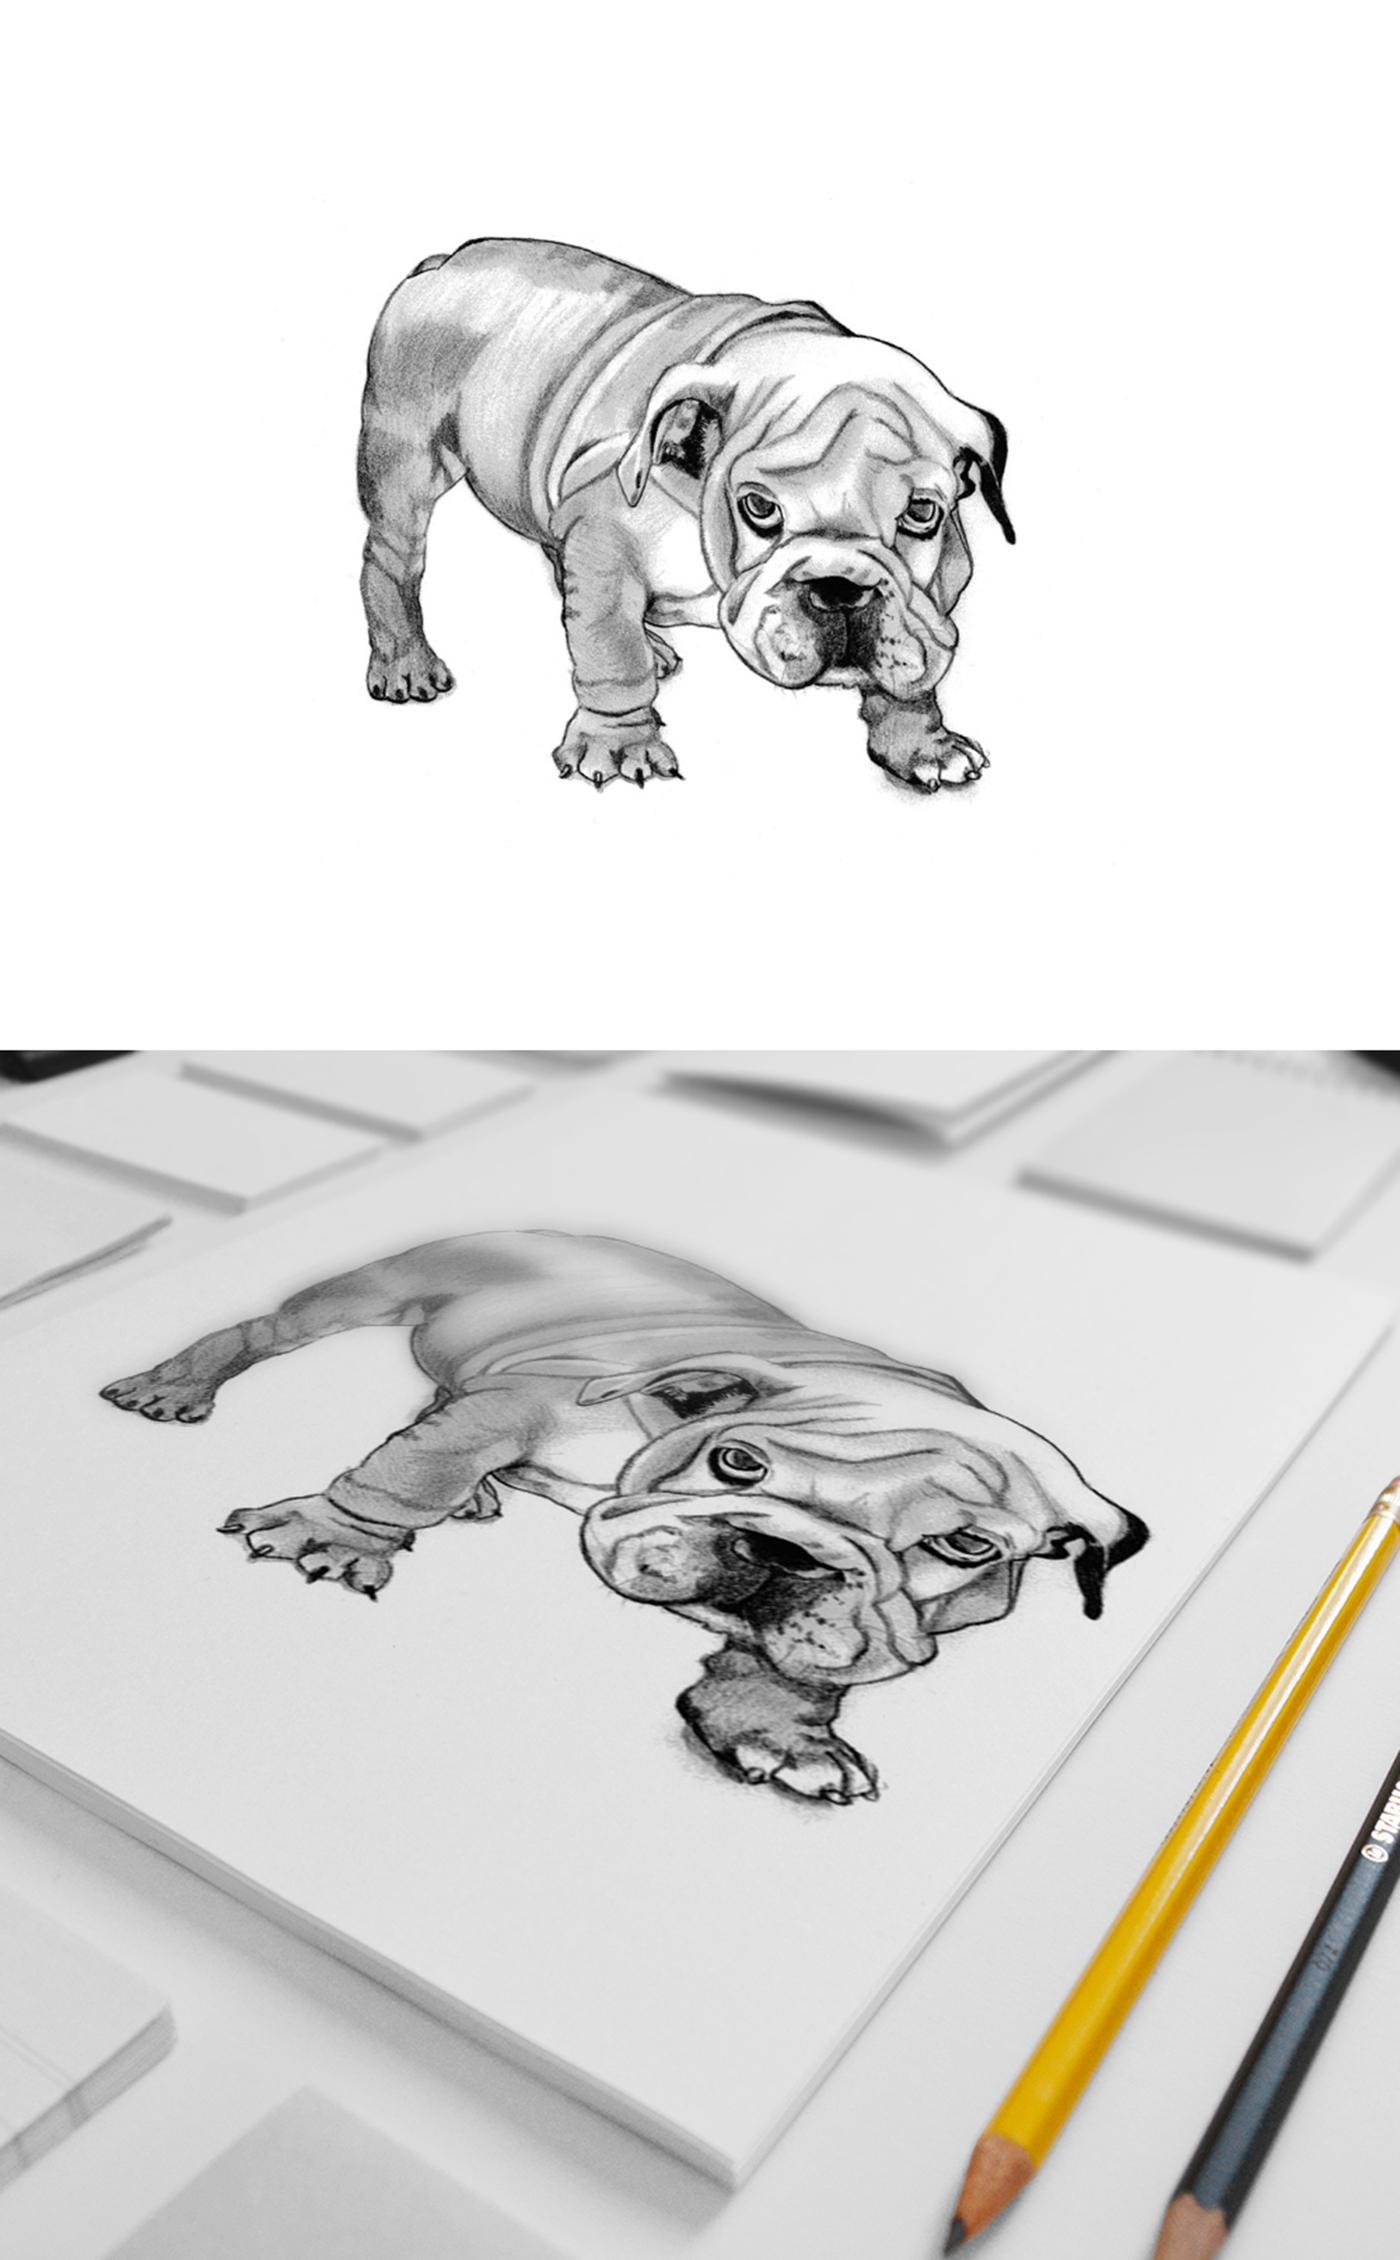 dog cachorro best friend draw bestfriend sketch animals Realism artwork